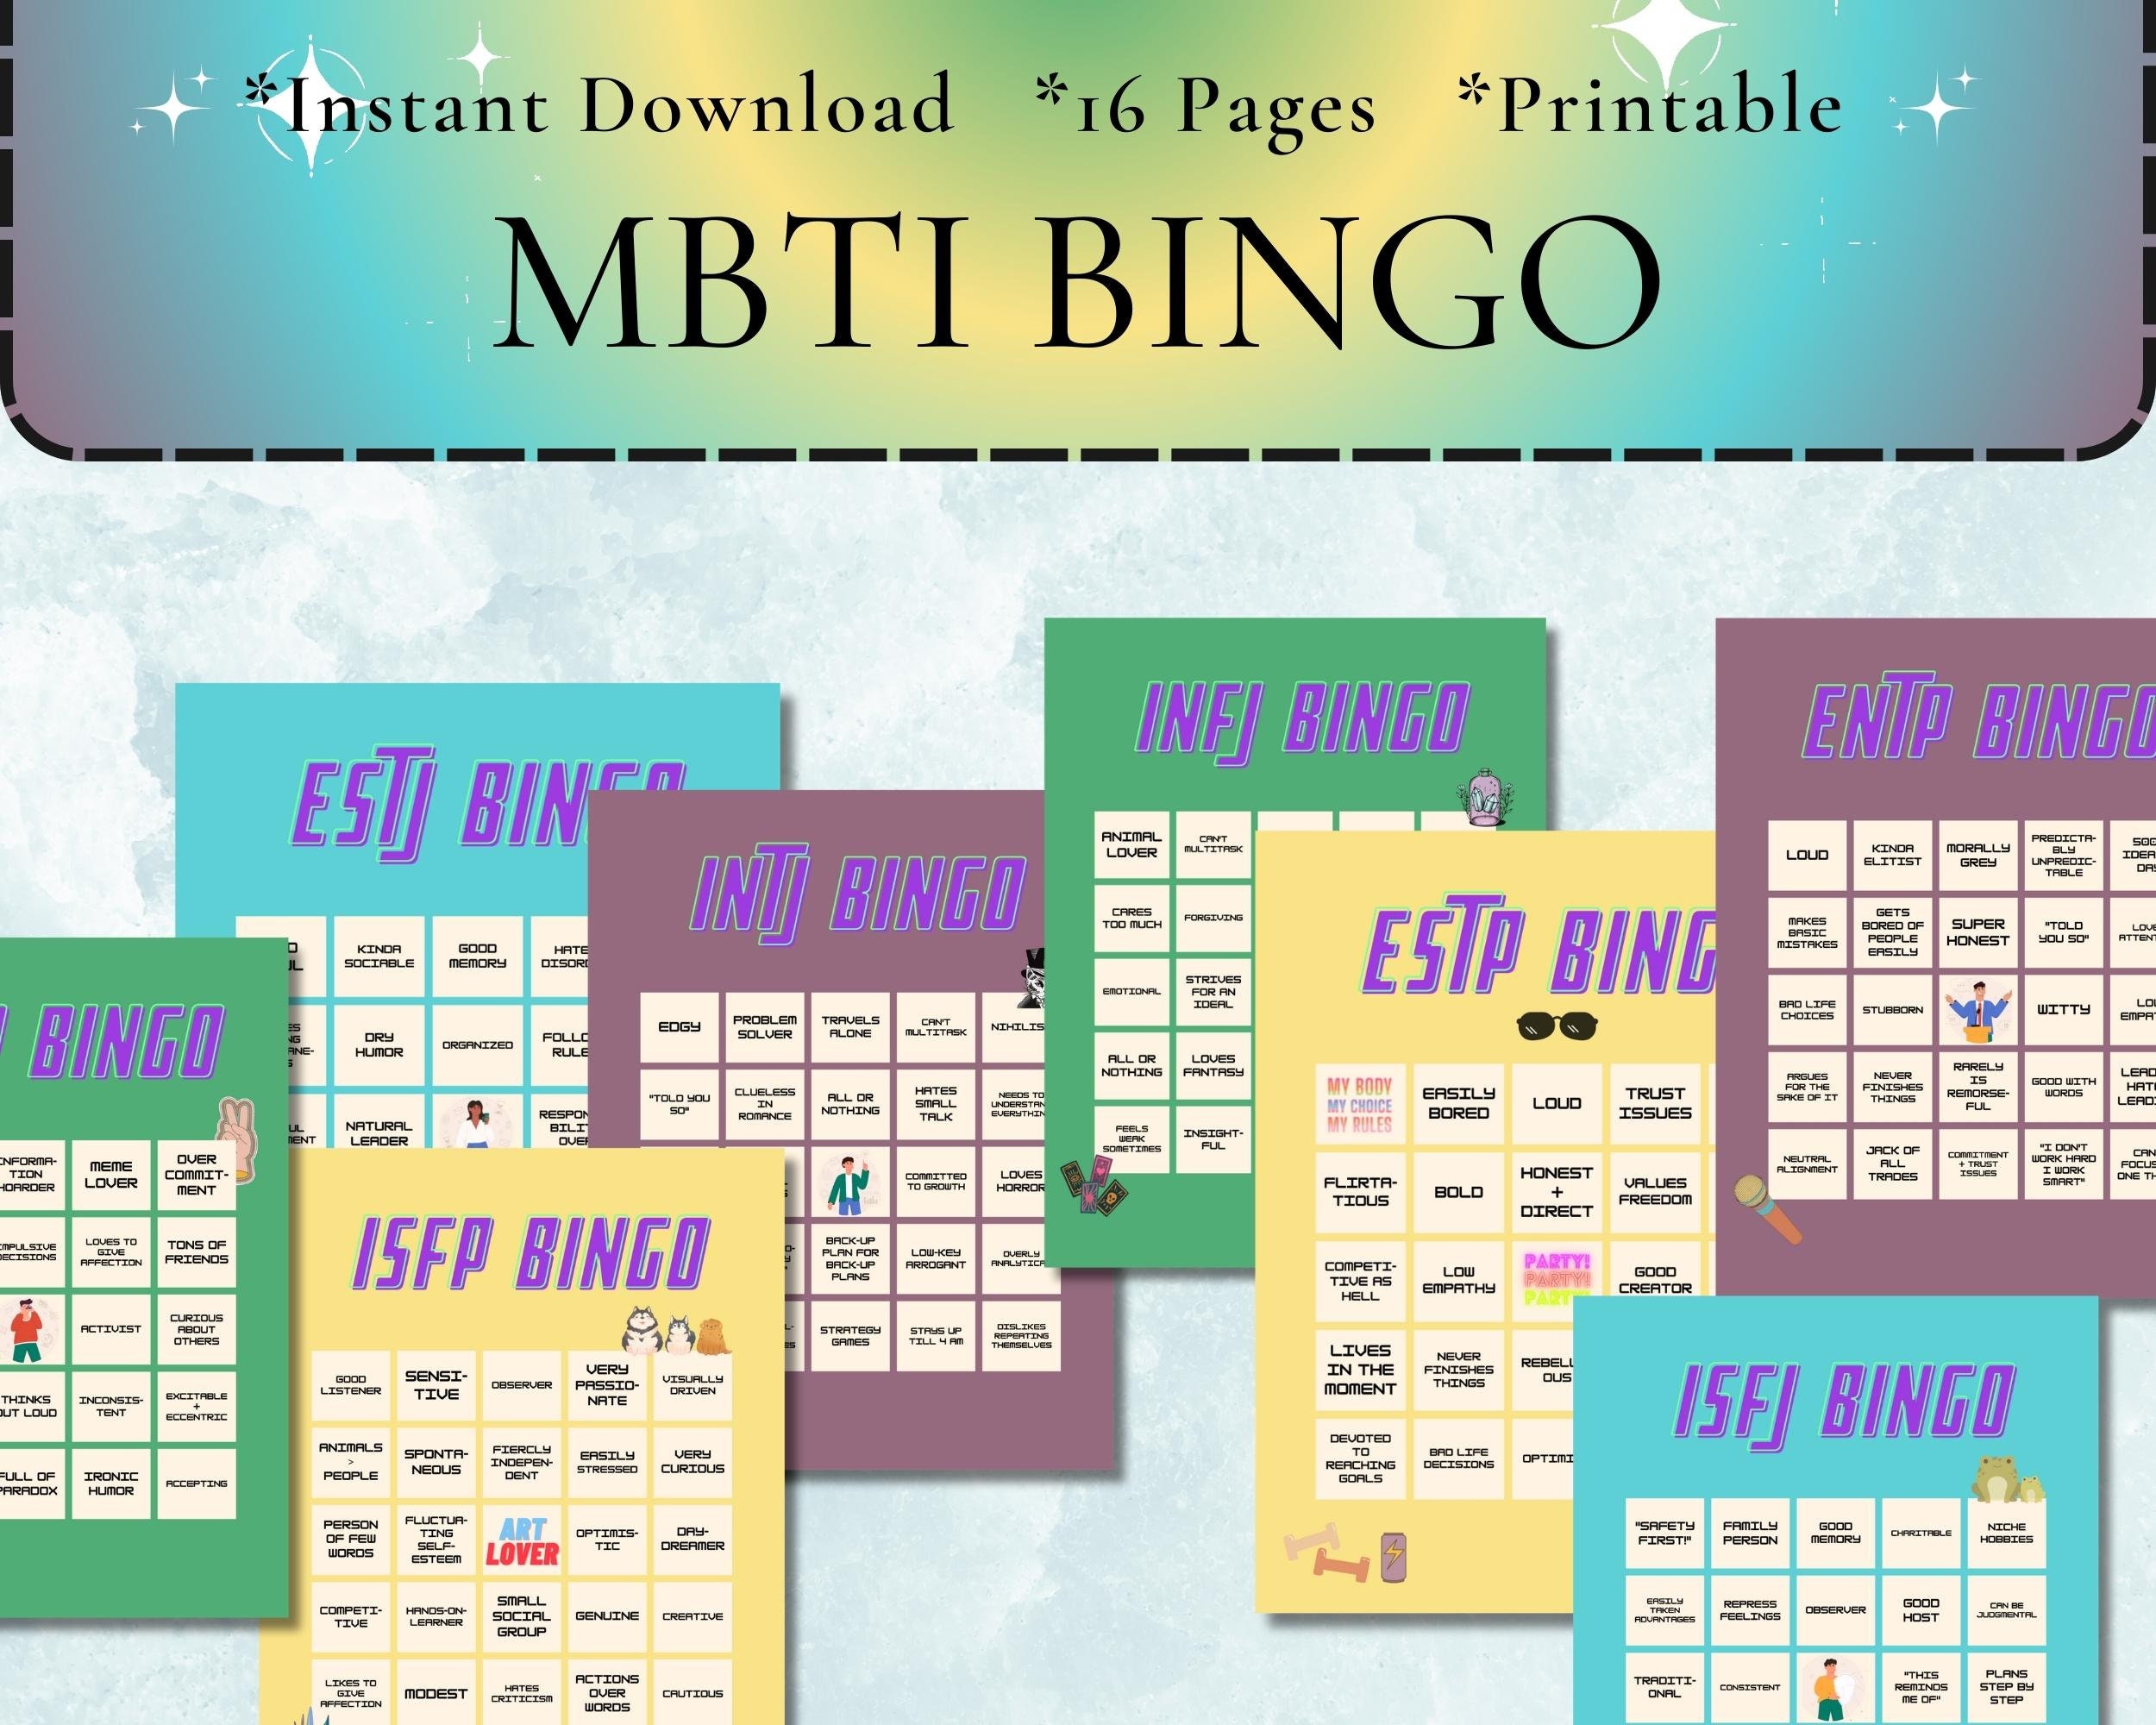 Bingo Series - INTJ bingo!